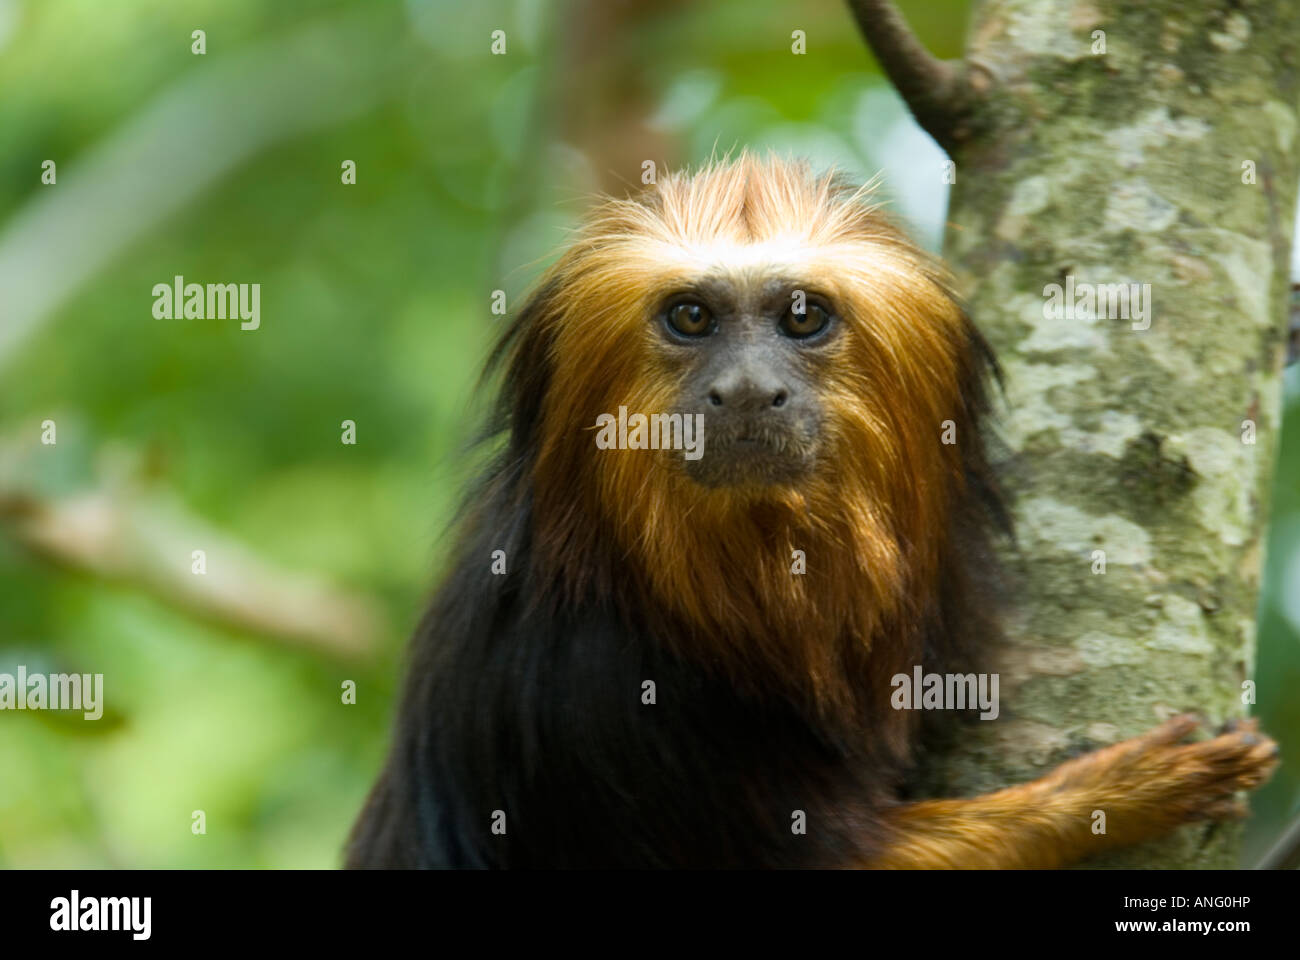 Stock Photo d'une tête de singe tamarin doré La photo a été prise dans la vallée des singes près de Poitiers en France Banque D'Images